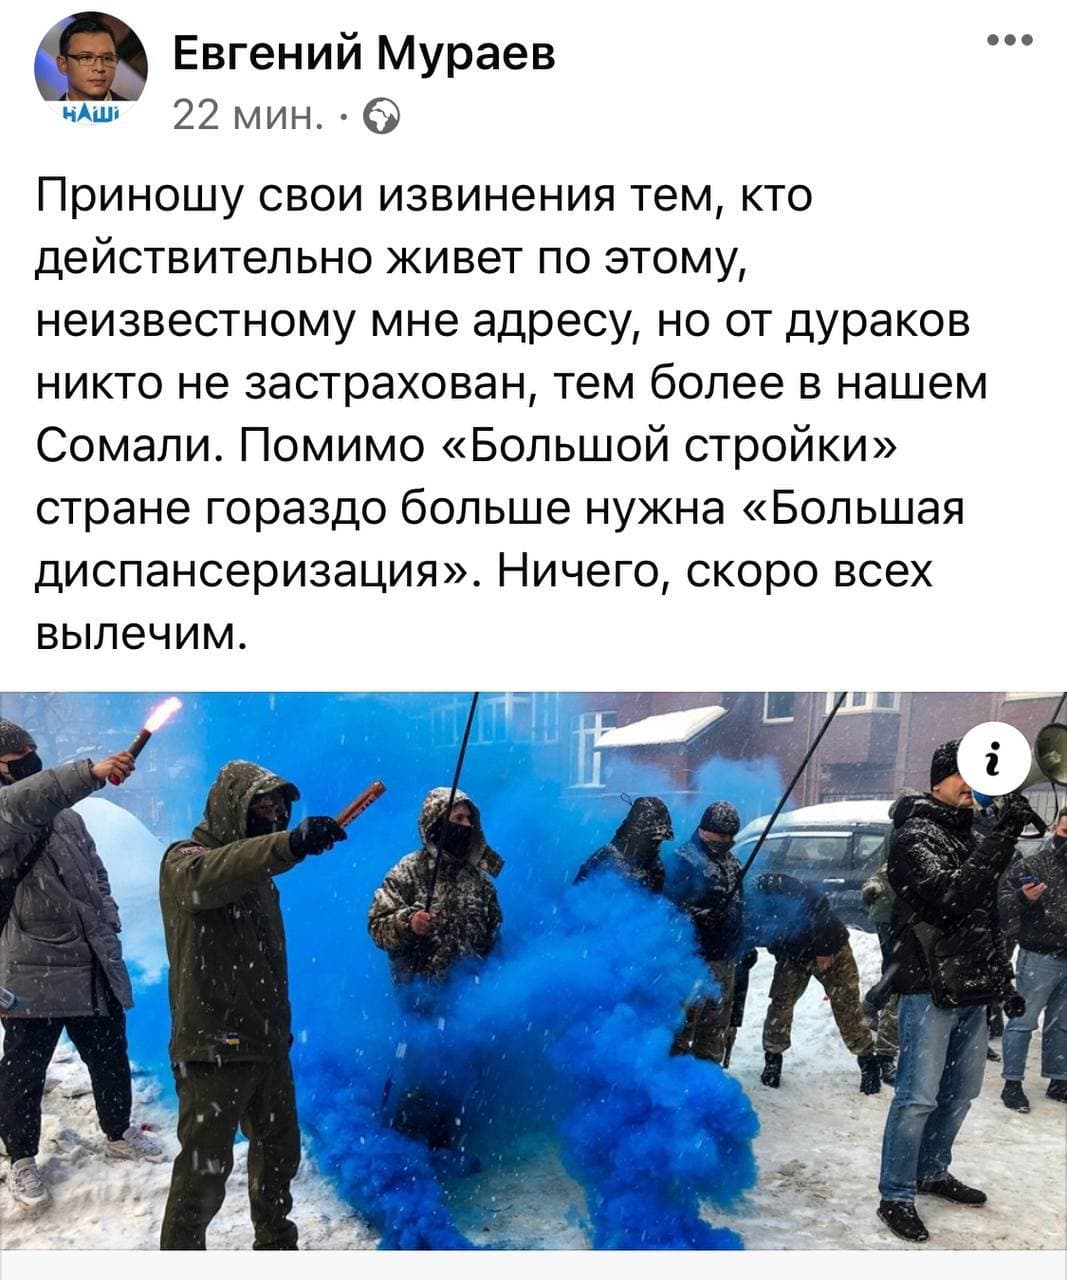 Карась и другие радикалы сегодня пикетировали якобы дом владельца телеканала "Наш" Мураева. Скриншот: Фейсбук